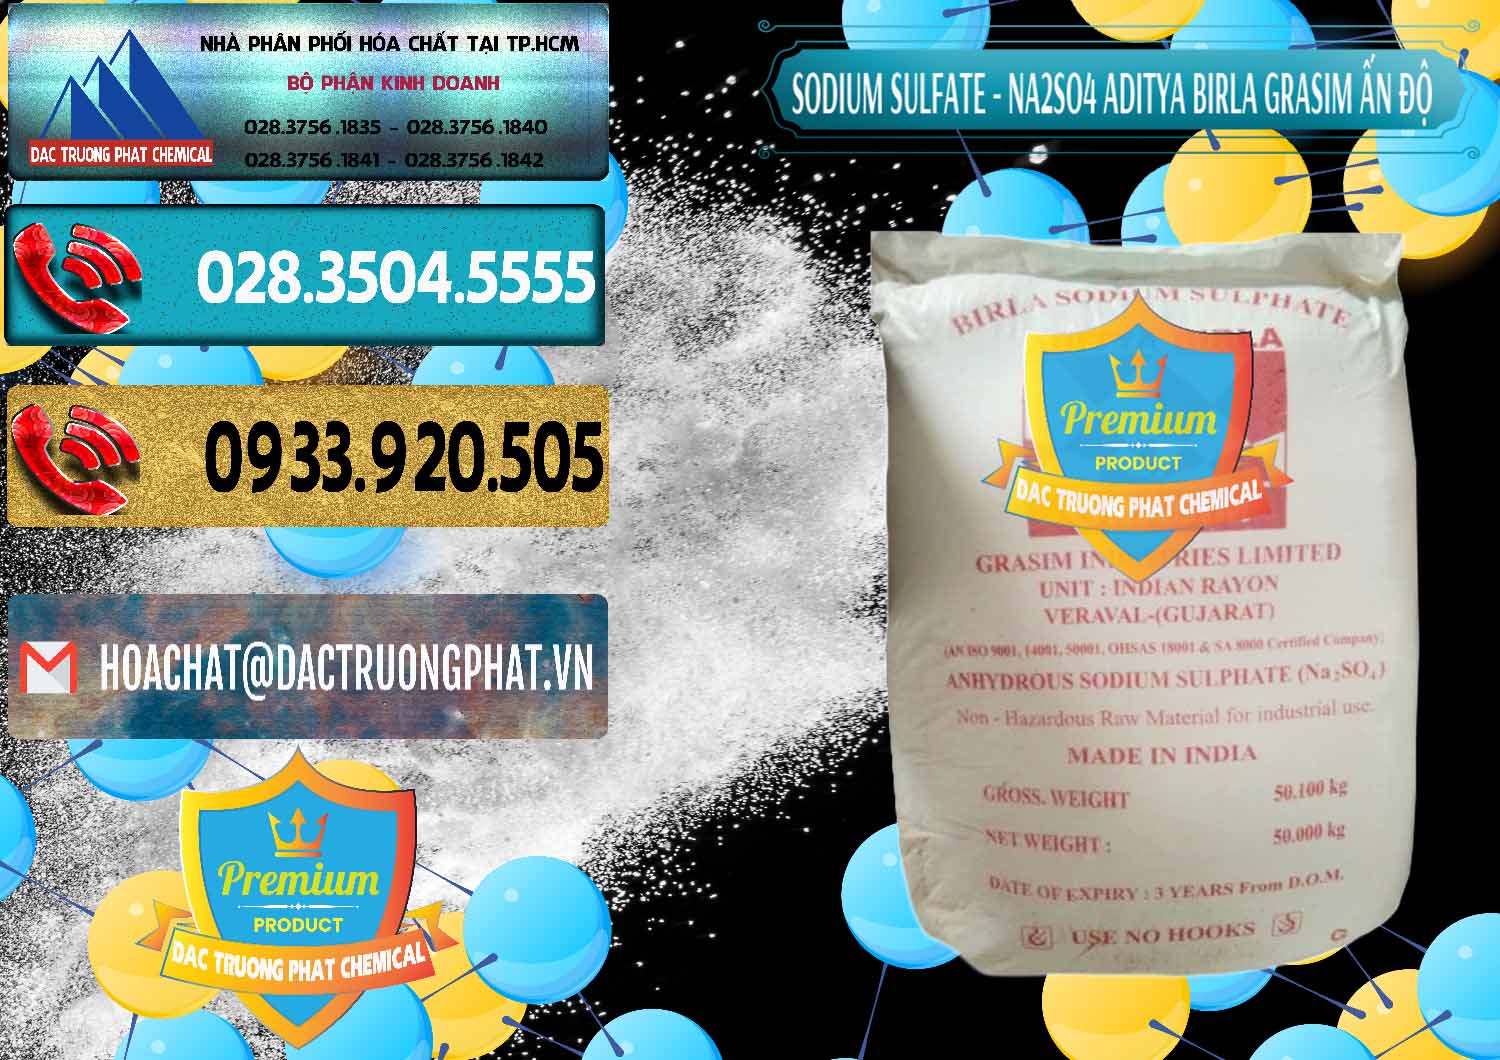 Cty chuyên bán ( phân phối ) Sodium Sulphate - Muối Sunfat Na2SO4 Grasim Ấn Độ India - 0356 - Nơi nhập khẩu - cung cấp hóa chất tại TP.HCM - hoachatdetnhuom.com